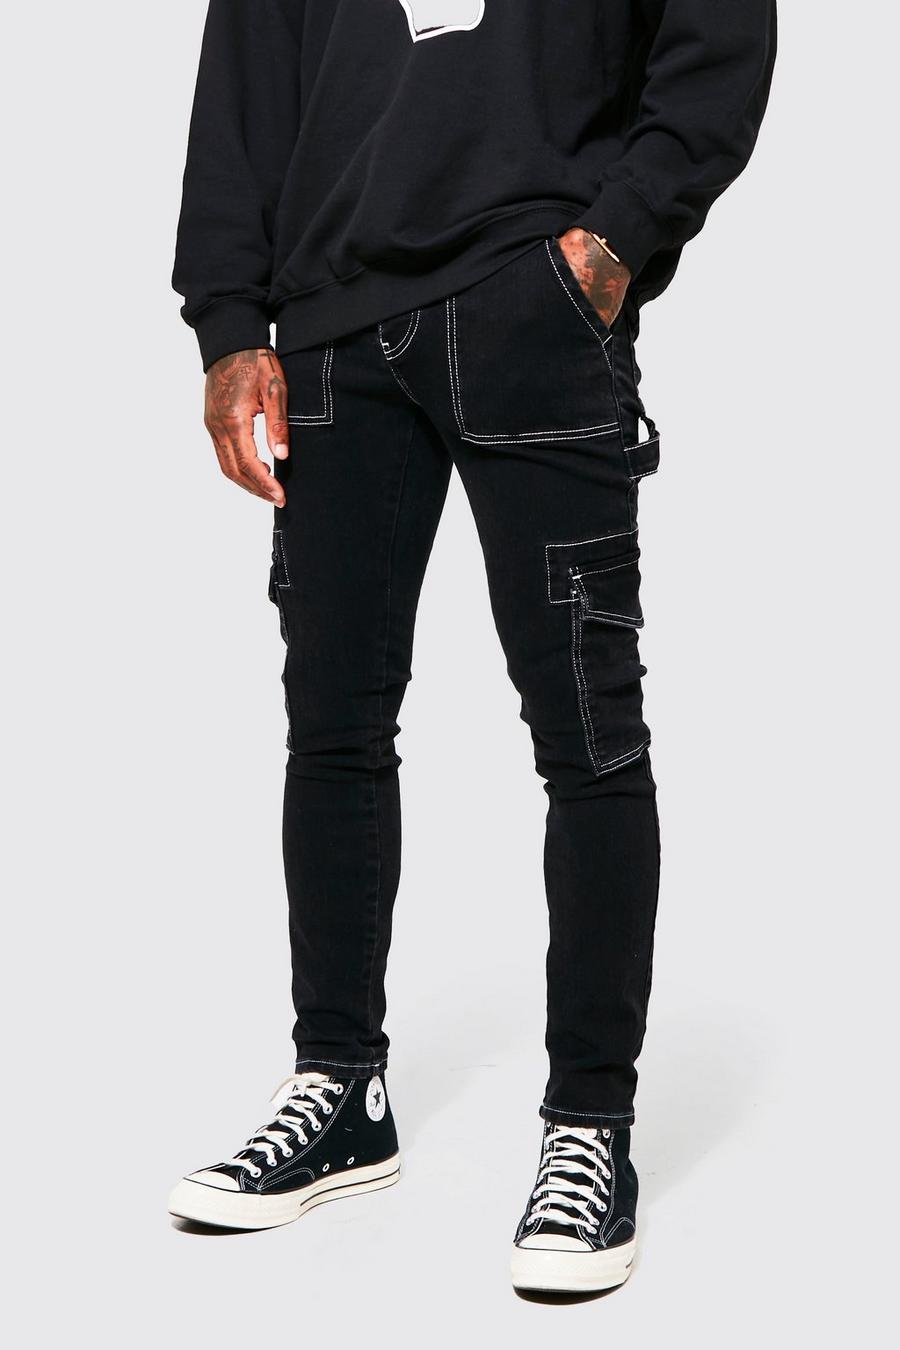 שחור דהוי סקיני ג'ינס דגמ"ח מבד סטרץ' עם תפר בצבעים מנוגדים image number 1